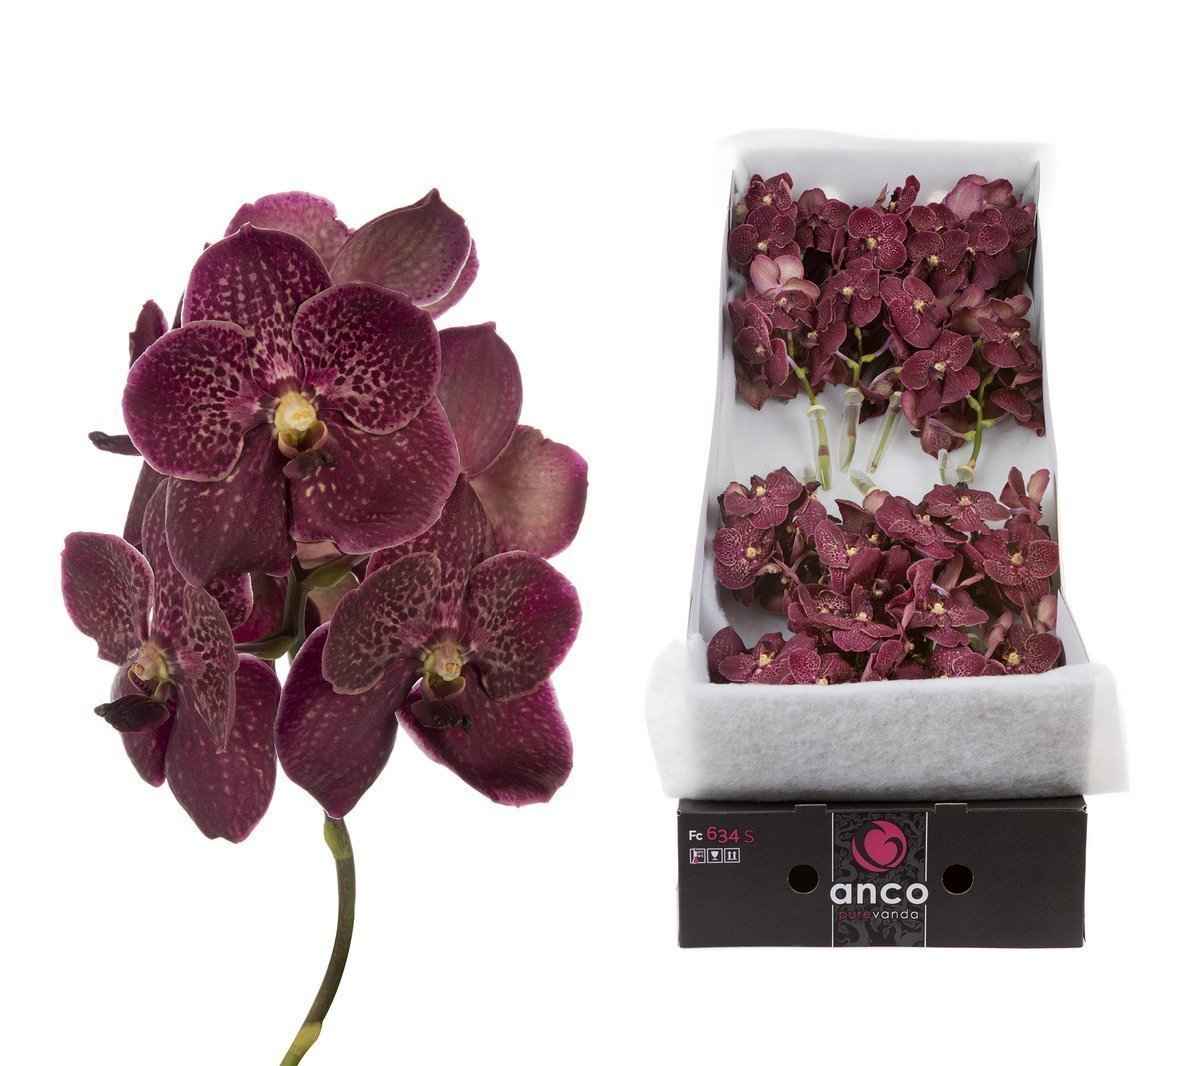 Срезанные цветы оптом Vanda sunanda chocolate red per stem от 8шт. из Голландии с доставкой по России